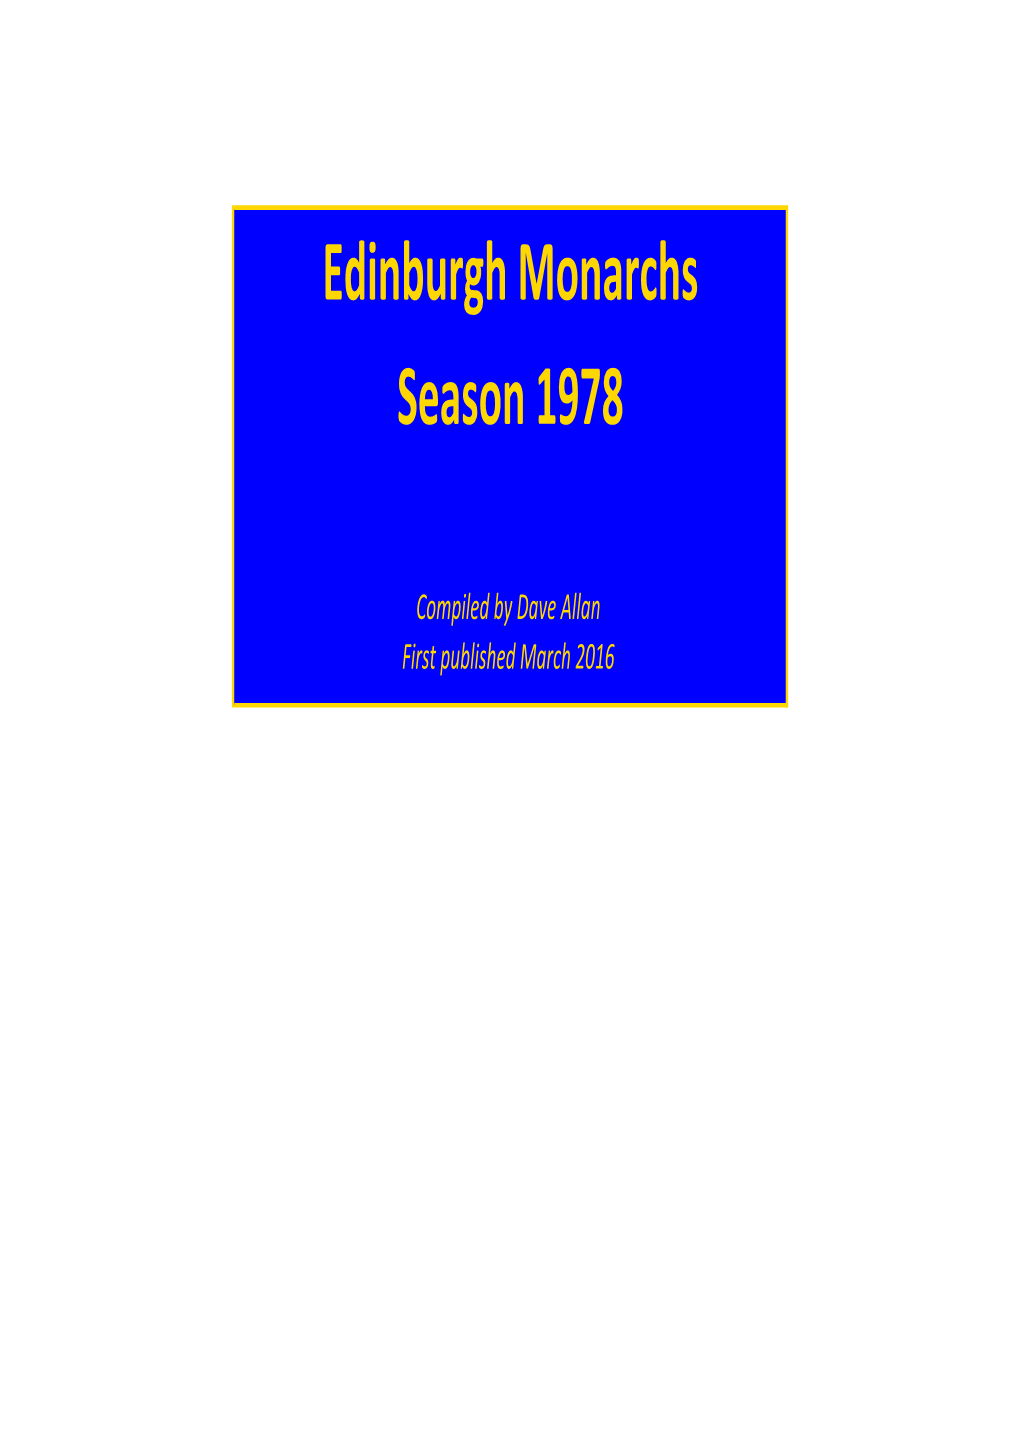 Edinburgh Monarchs Season 1978